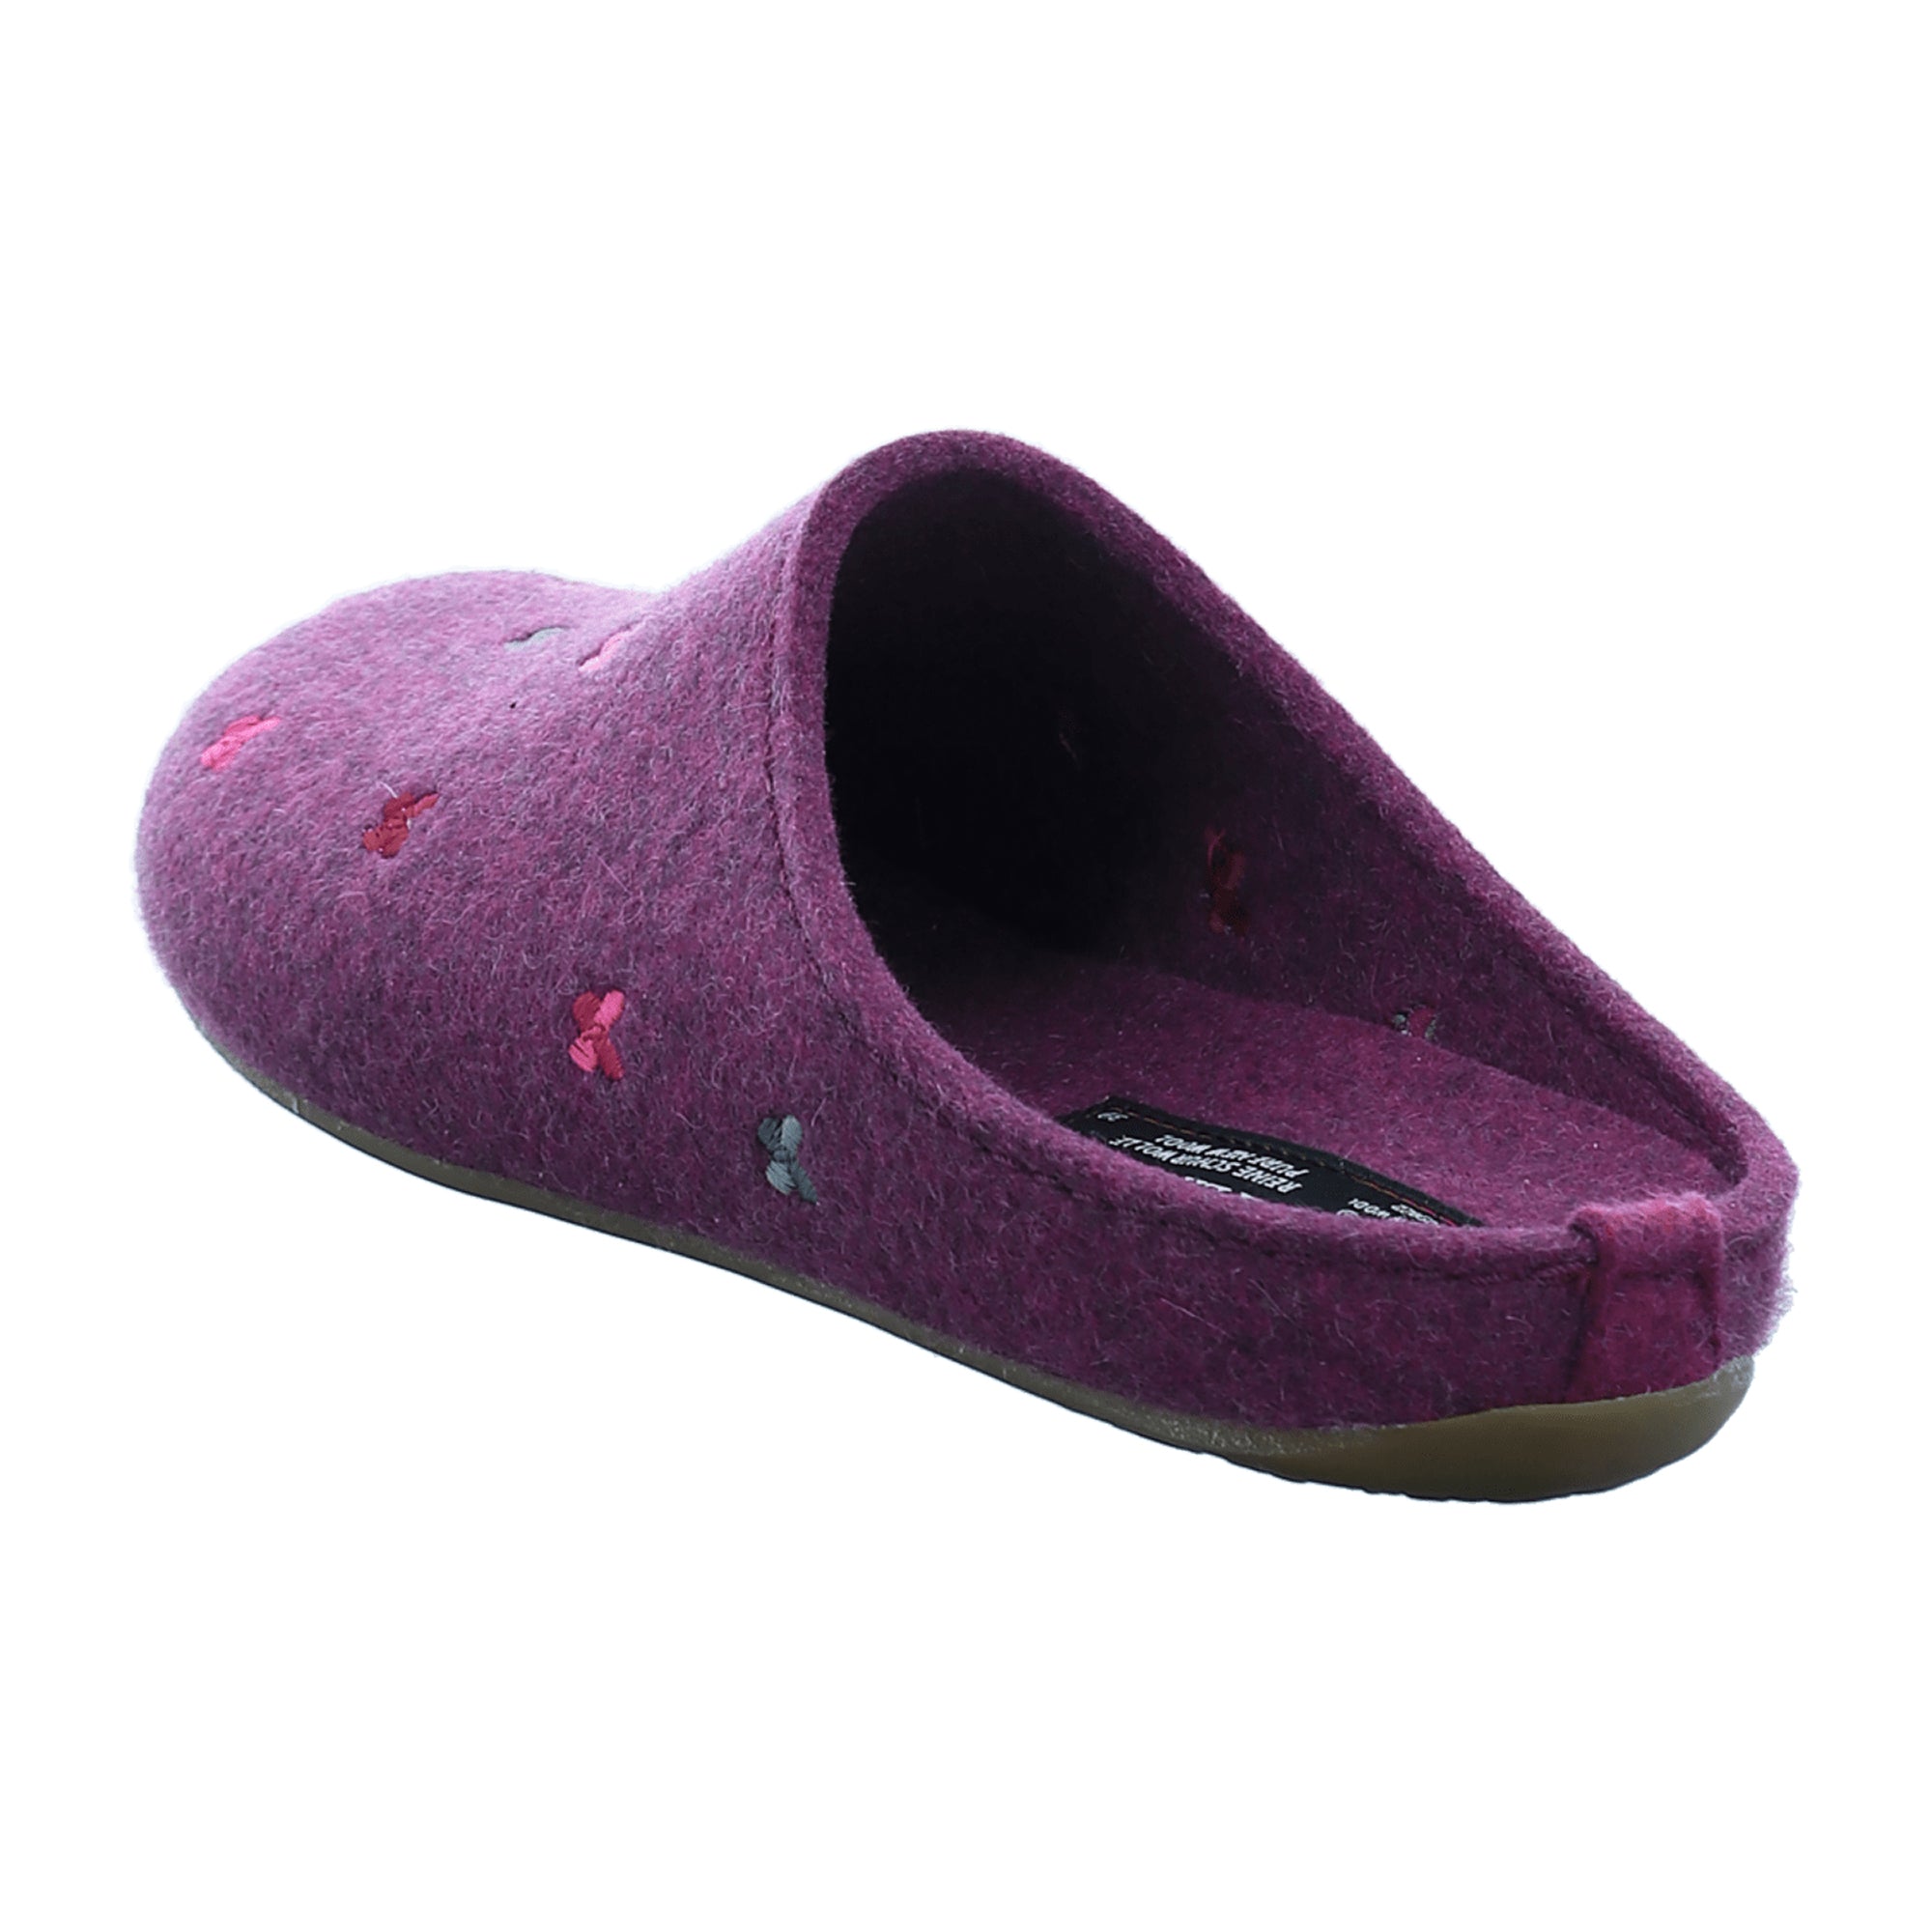 Haflinger Women's Slippers in Purple - Cozy & Stylish Footwear